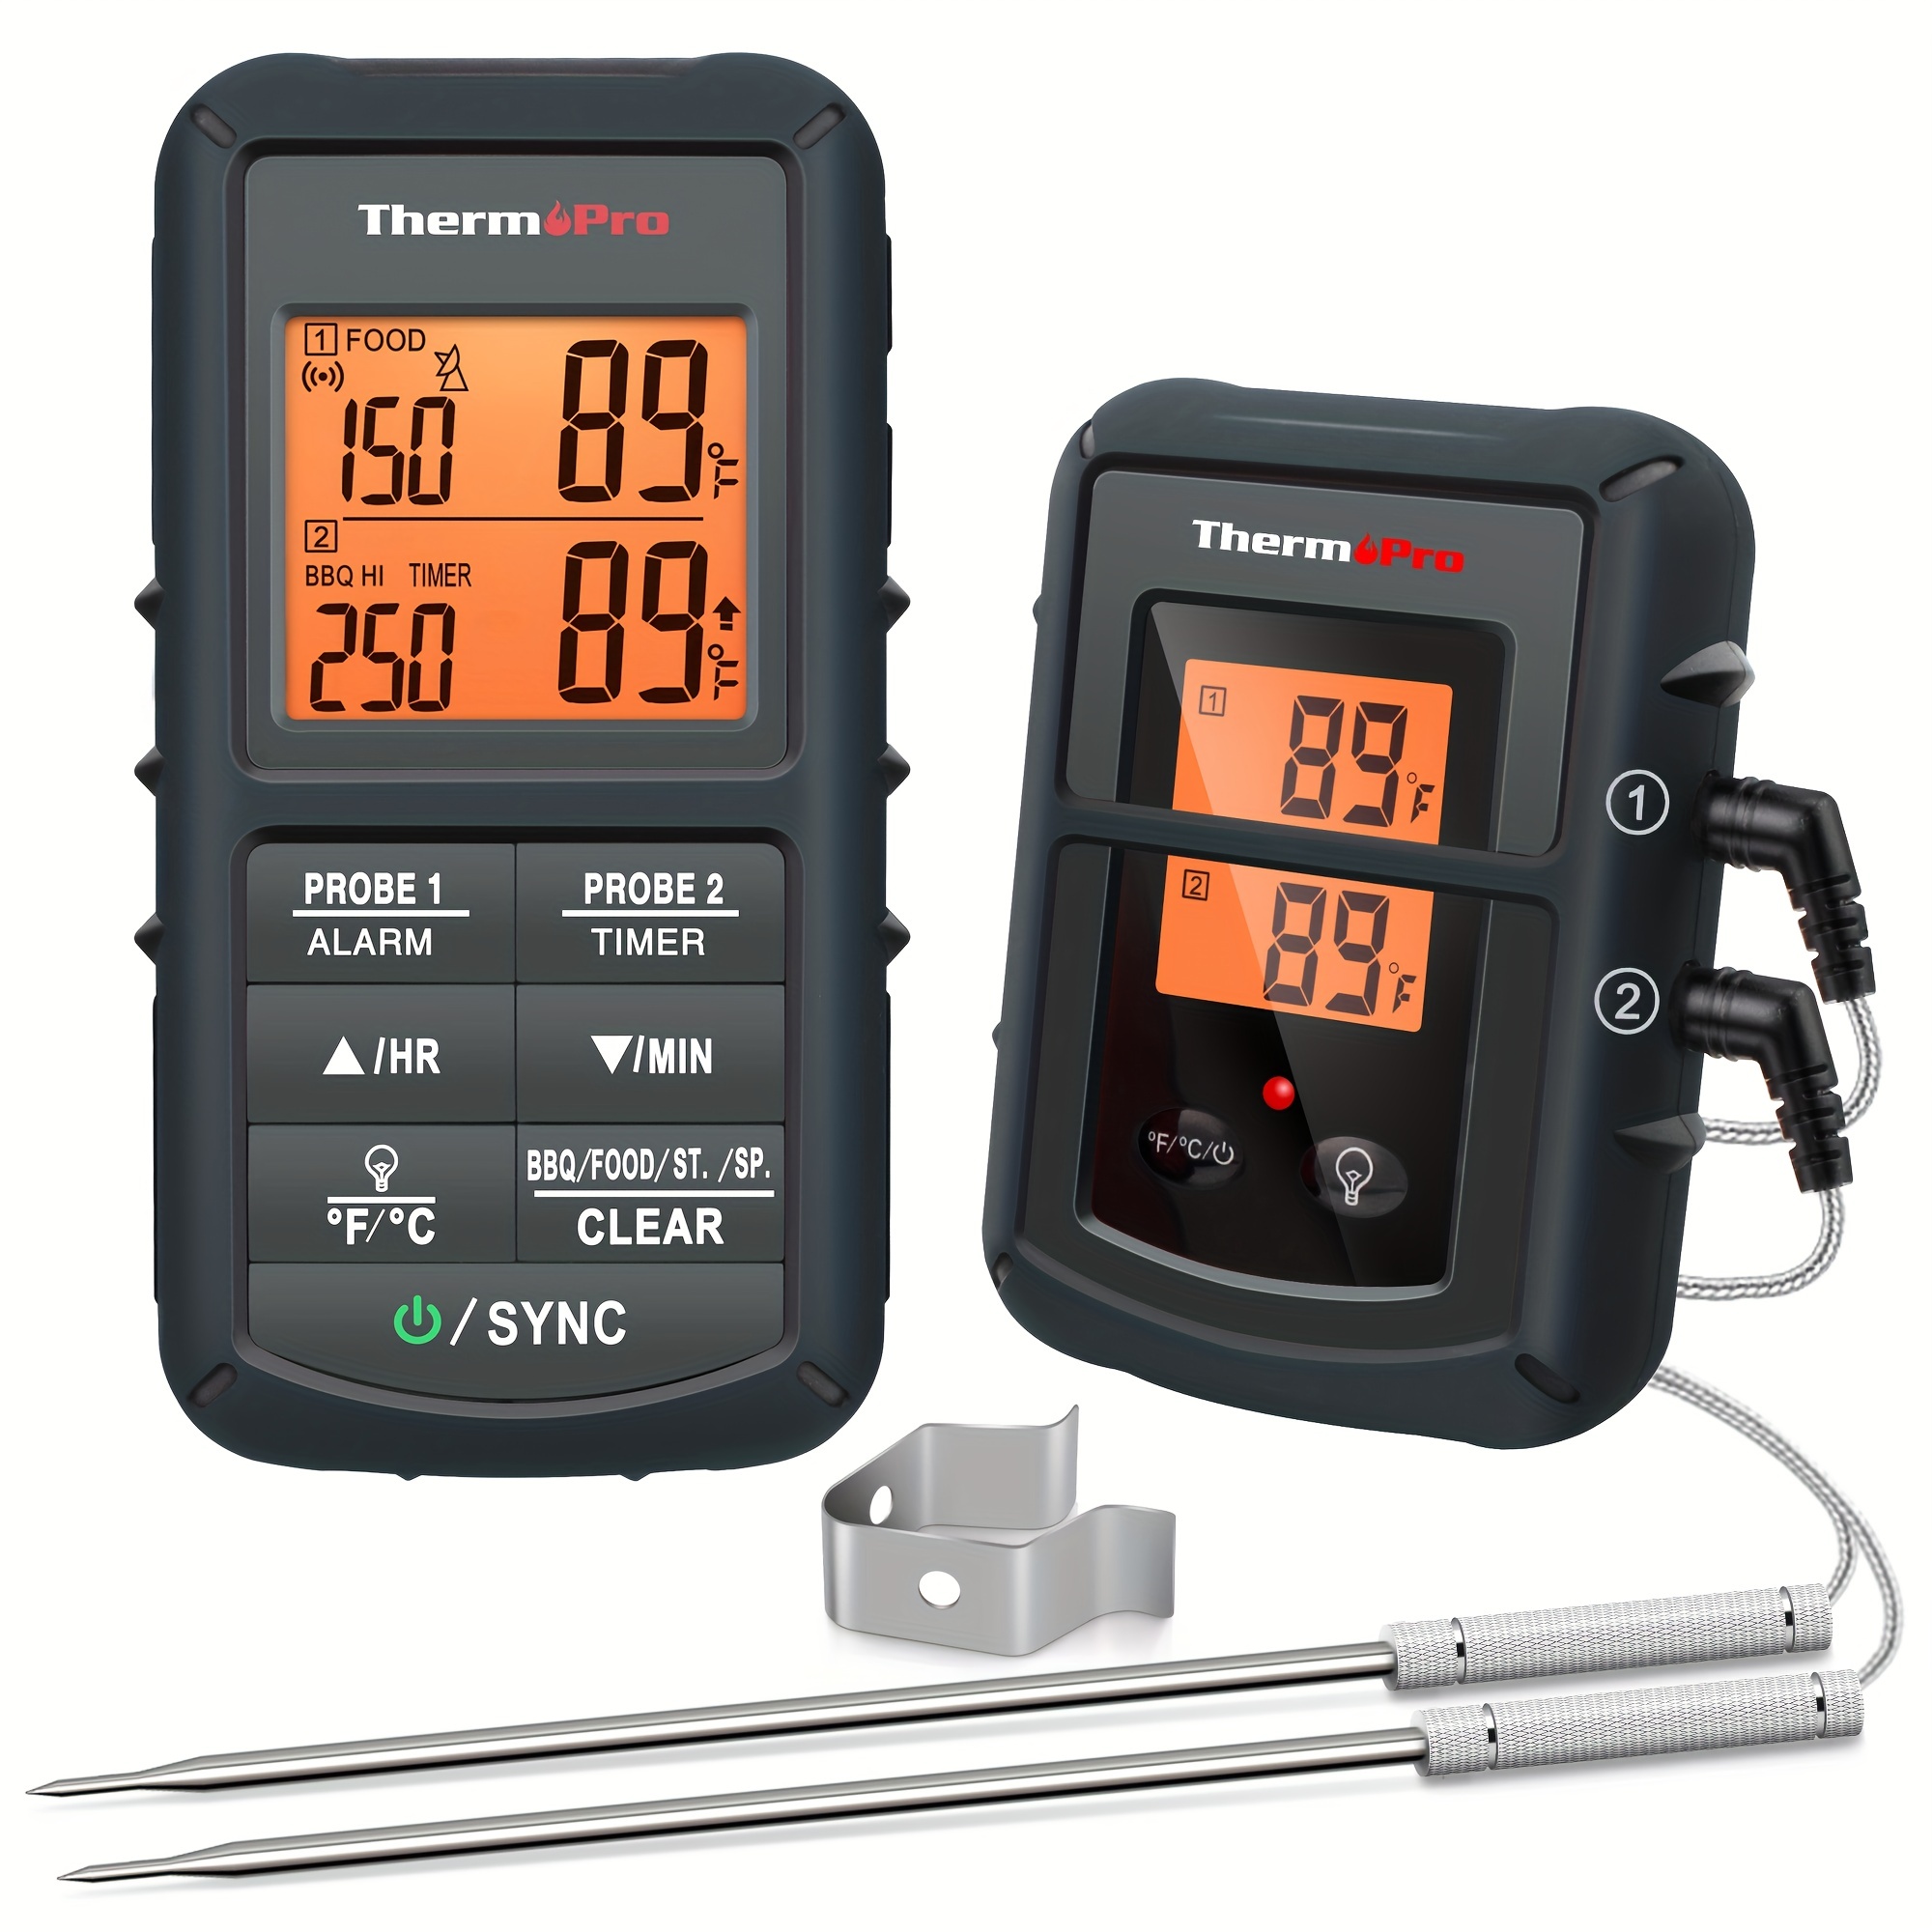 ThermoPro TP08B de 500 pies - Termómetro inalámbrico para Barbacoa, Ahumado, Horneado, Accesorio de Medición De Temperatura Para Horno De Doble Sonda Para Cocinar Alimentos (Batería No Incluida)